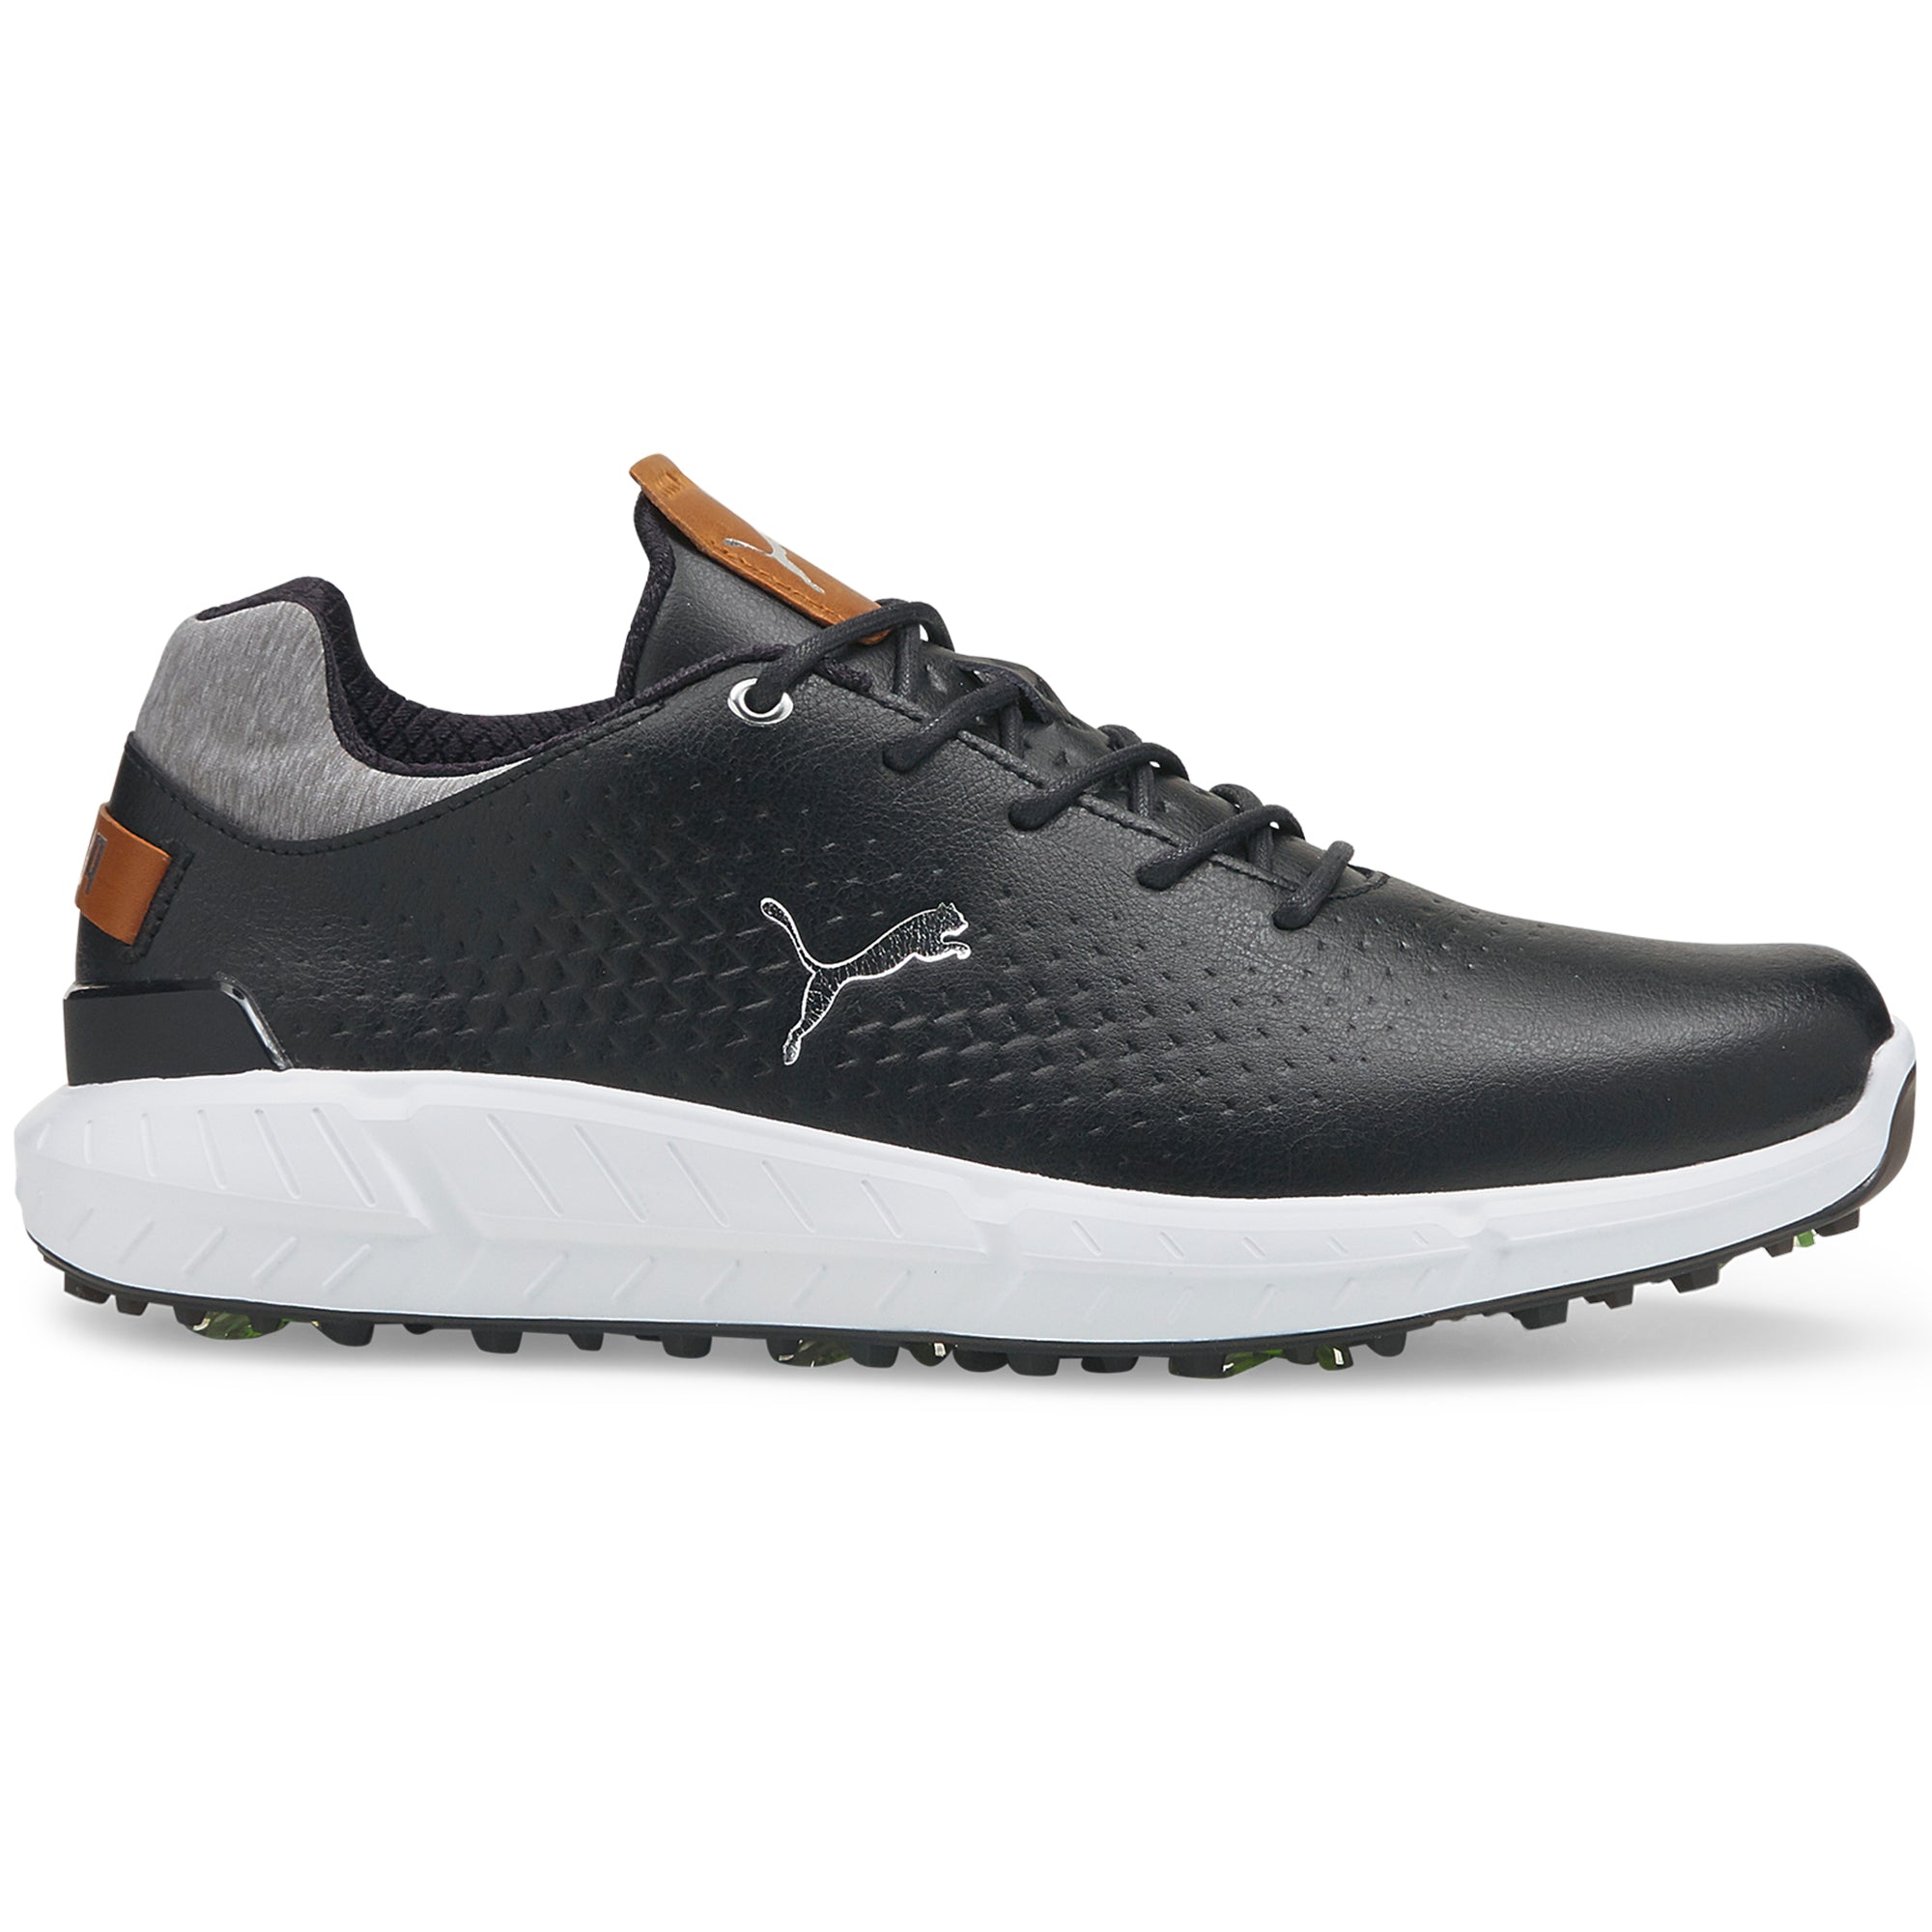 puma-ignite-articulate-leather-golf-shoes-376155-puma-black-silver-02